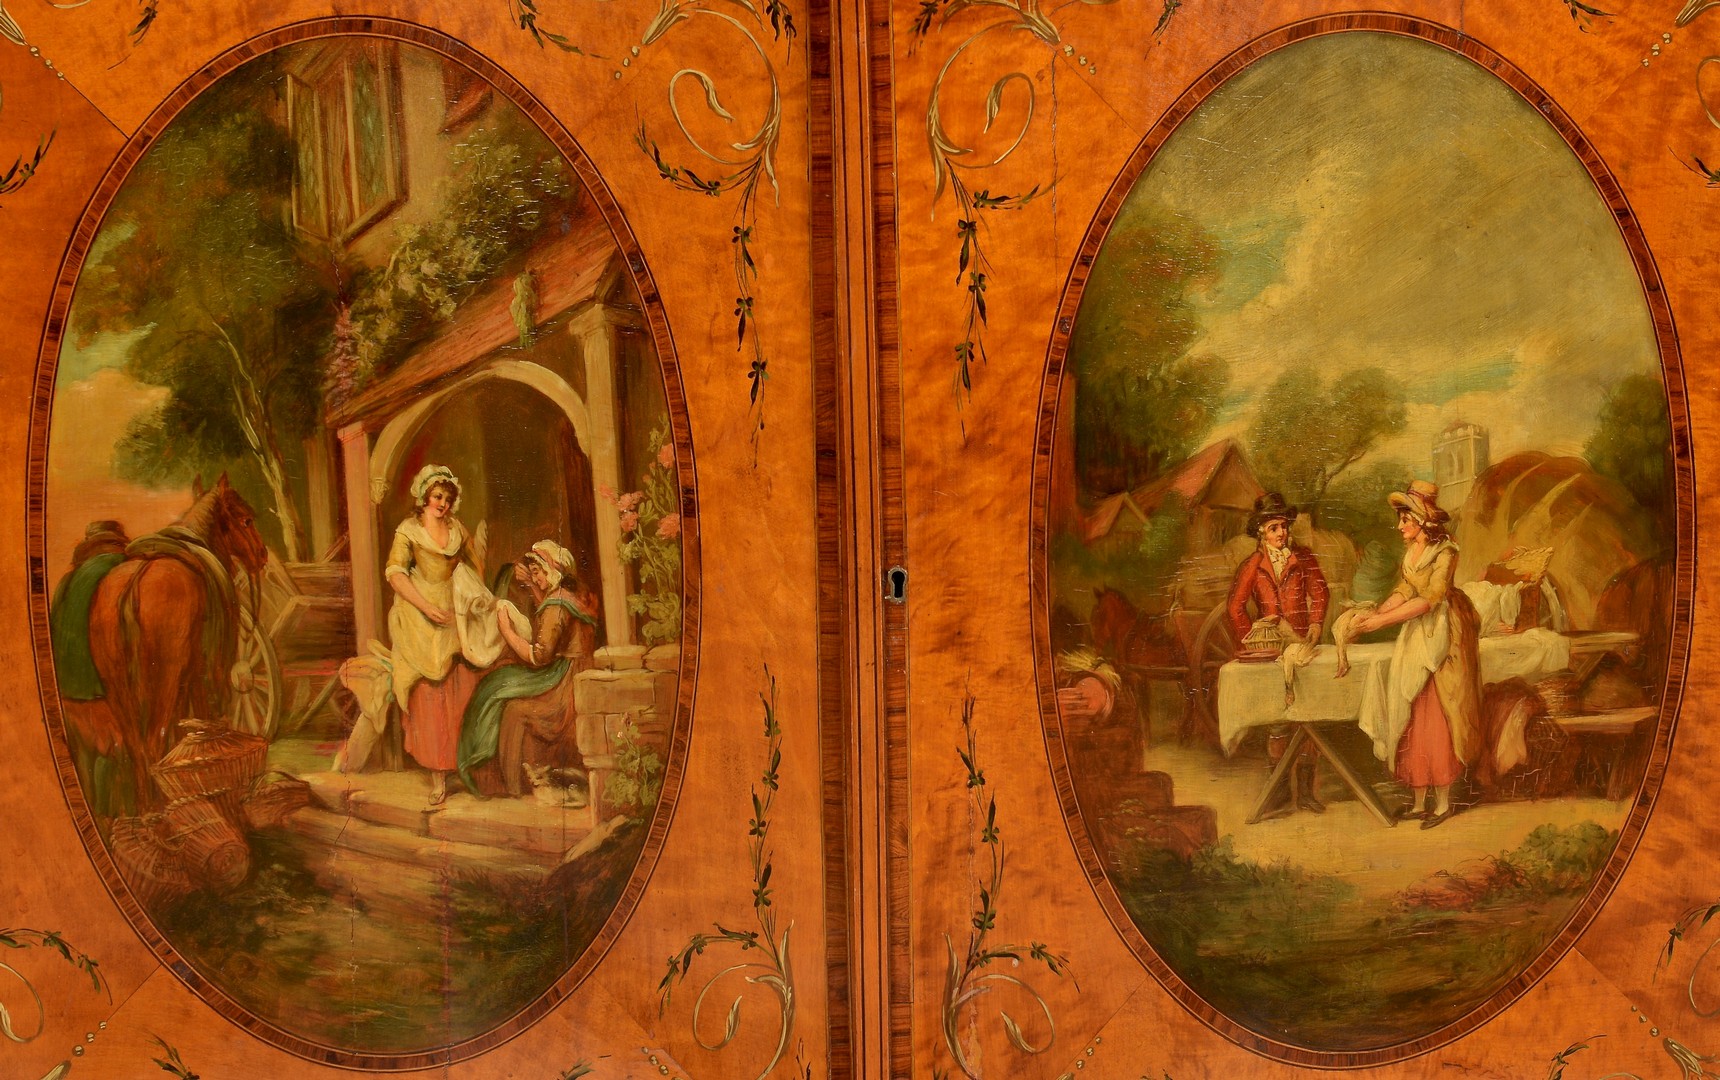 Lot 100: Edwardian Painted Satinwood Cabinet